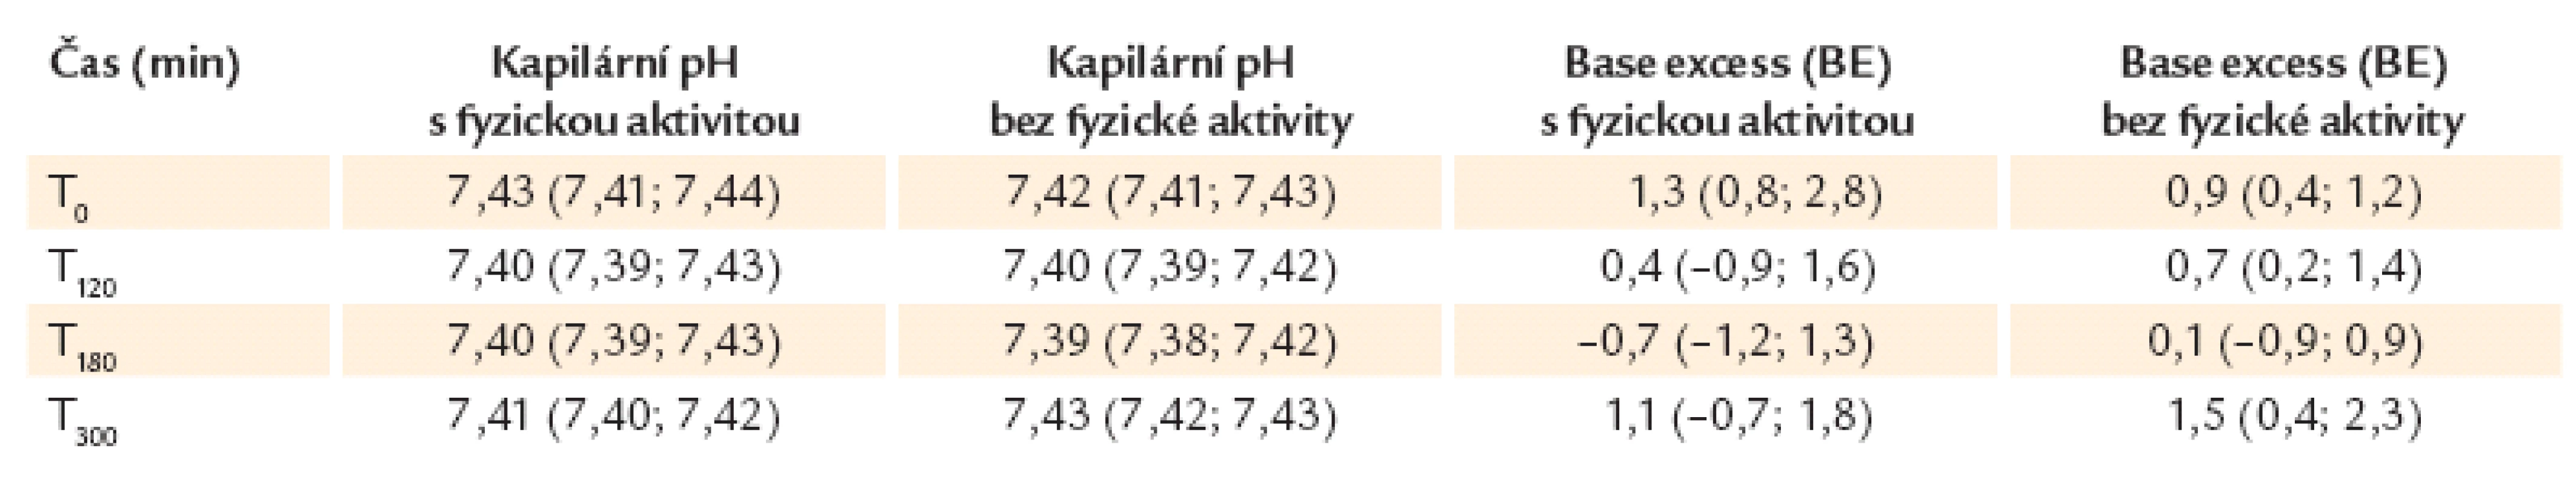 Parametry acidobazické rovnováhy – ve formátu medián (1. kvartil, 3. kvartil). Žádný z parametrů se ve vyše­třovaných skupinách (s a bez fyzické aktivity) statisticky významně nelišil. Hodnoty base excess (BE) jsou uvedeny  v mmol/l.